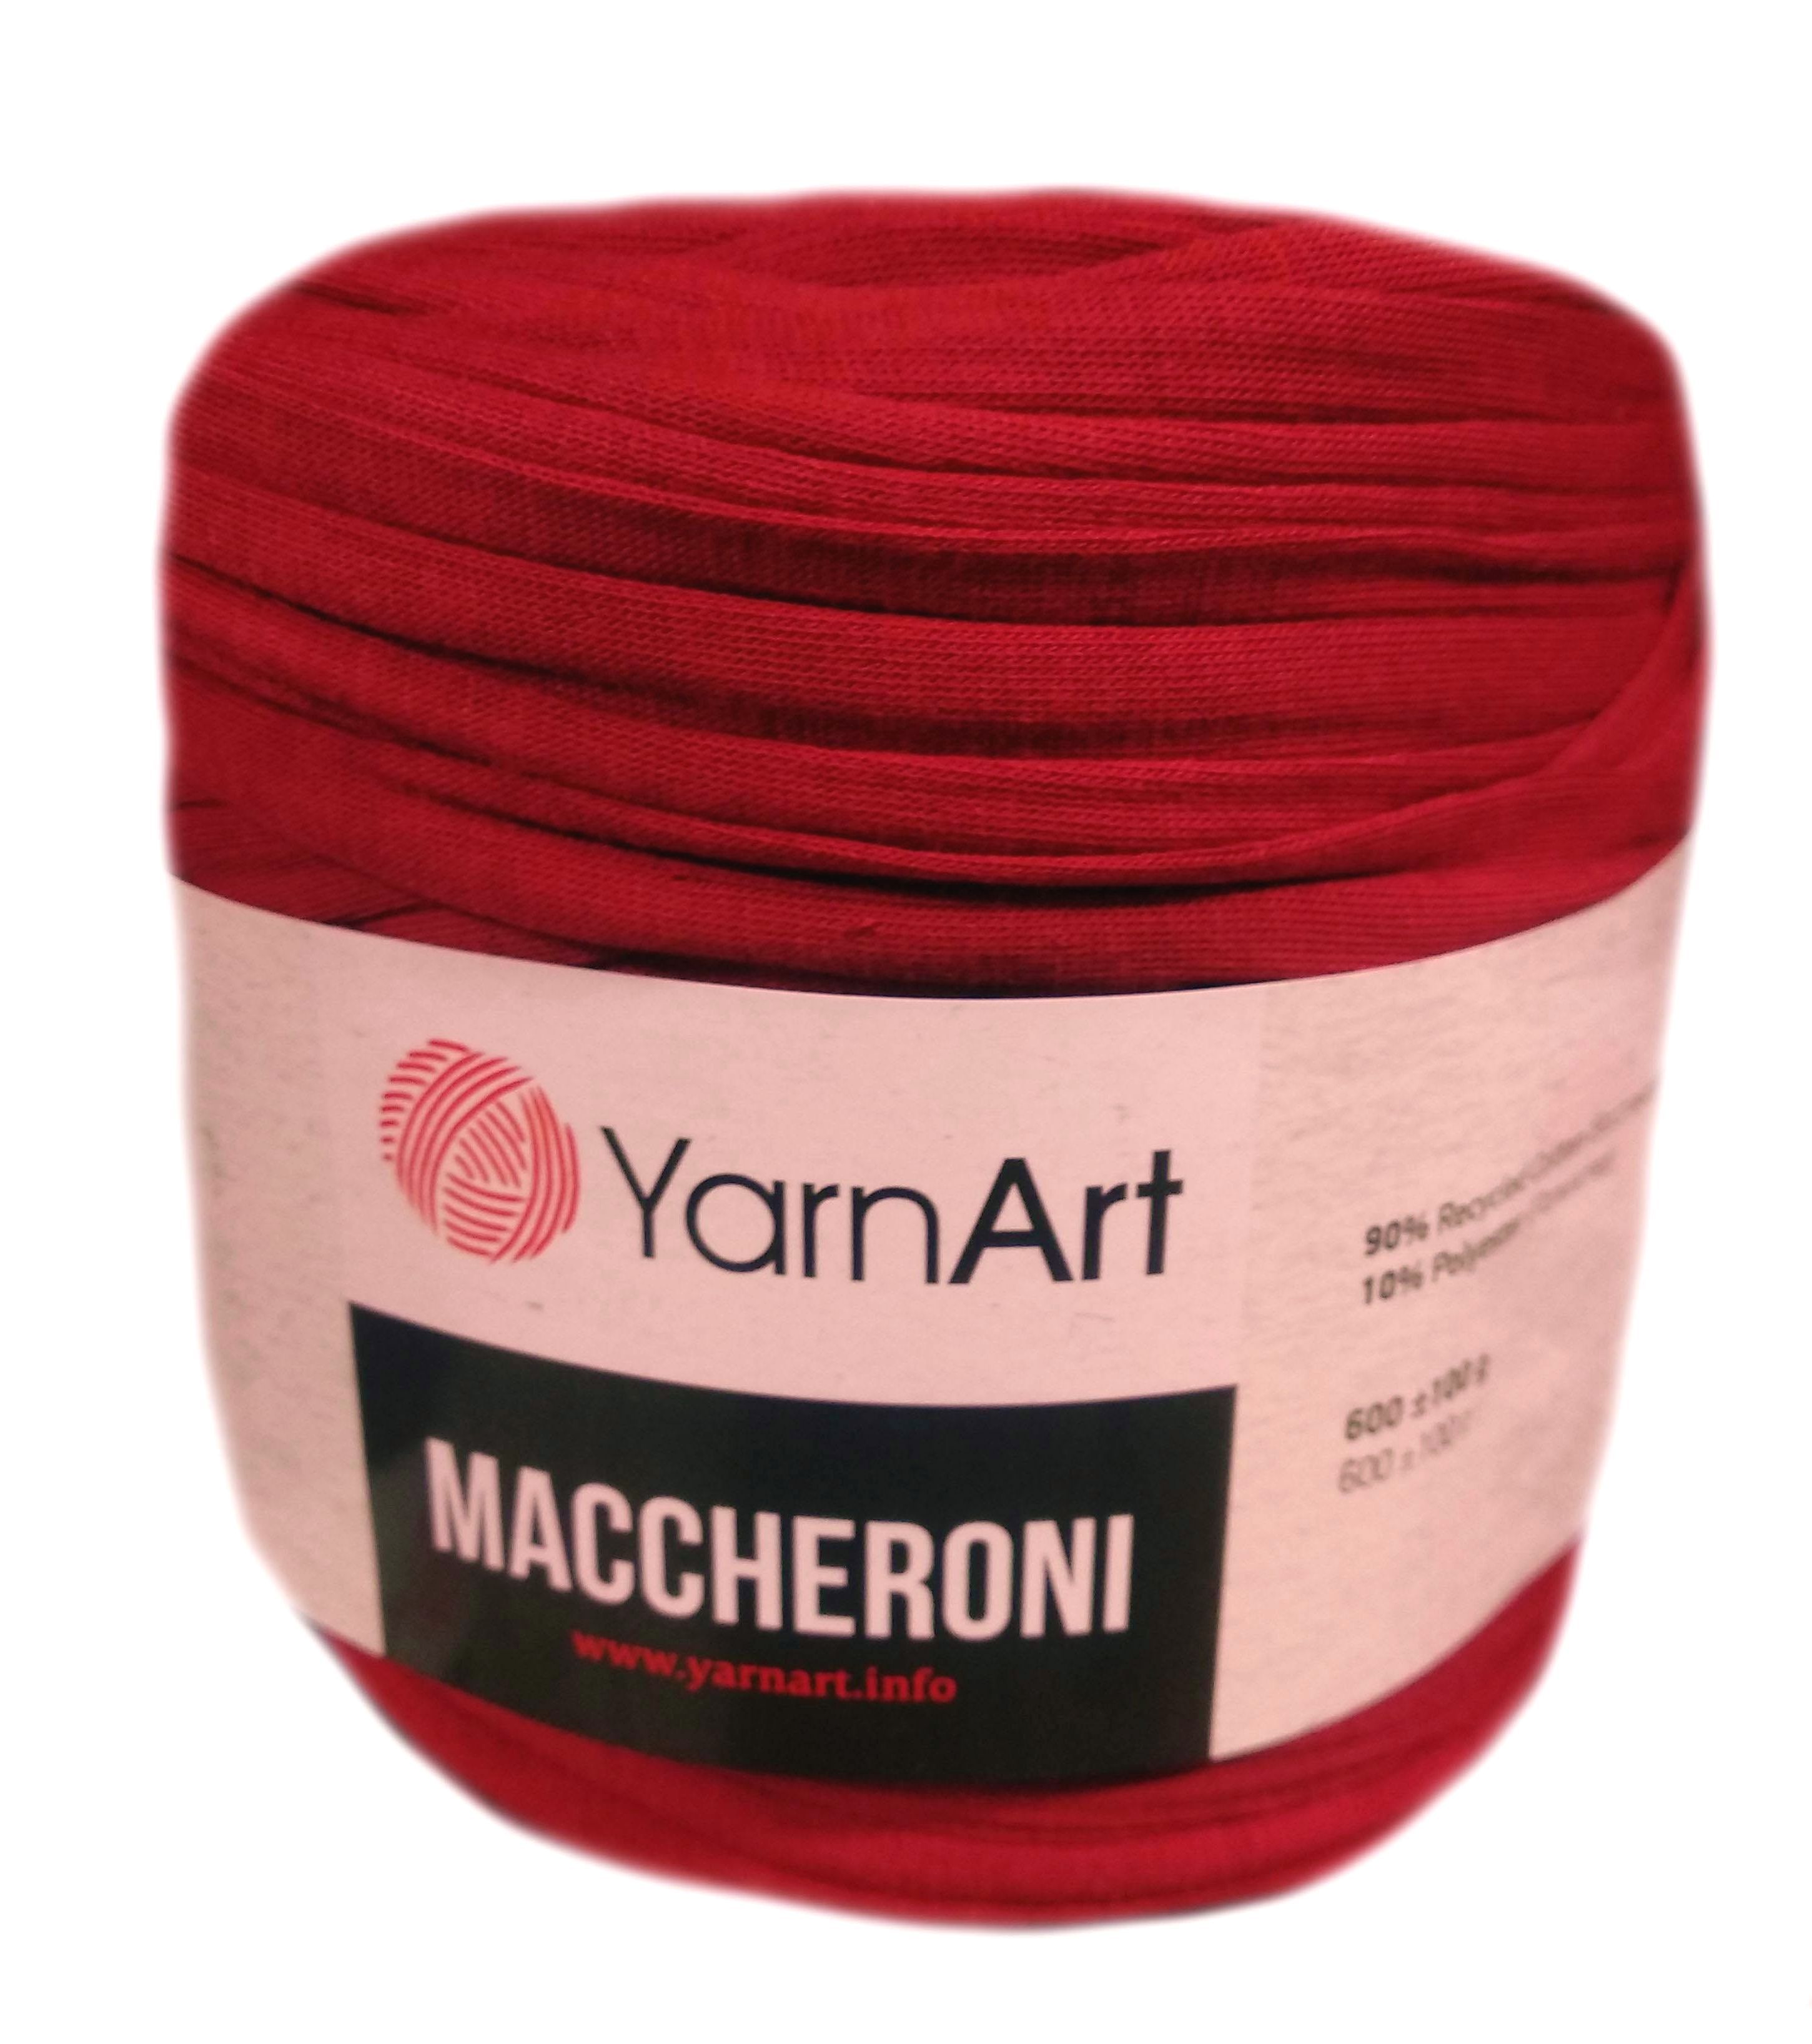 YarnArt MACCHERONI, piros póló fonal.Tű 12-15 mm.